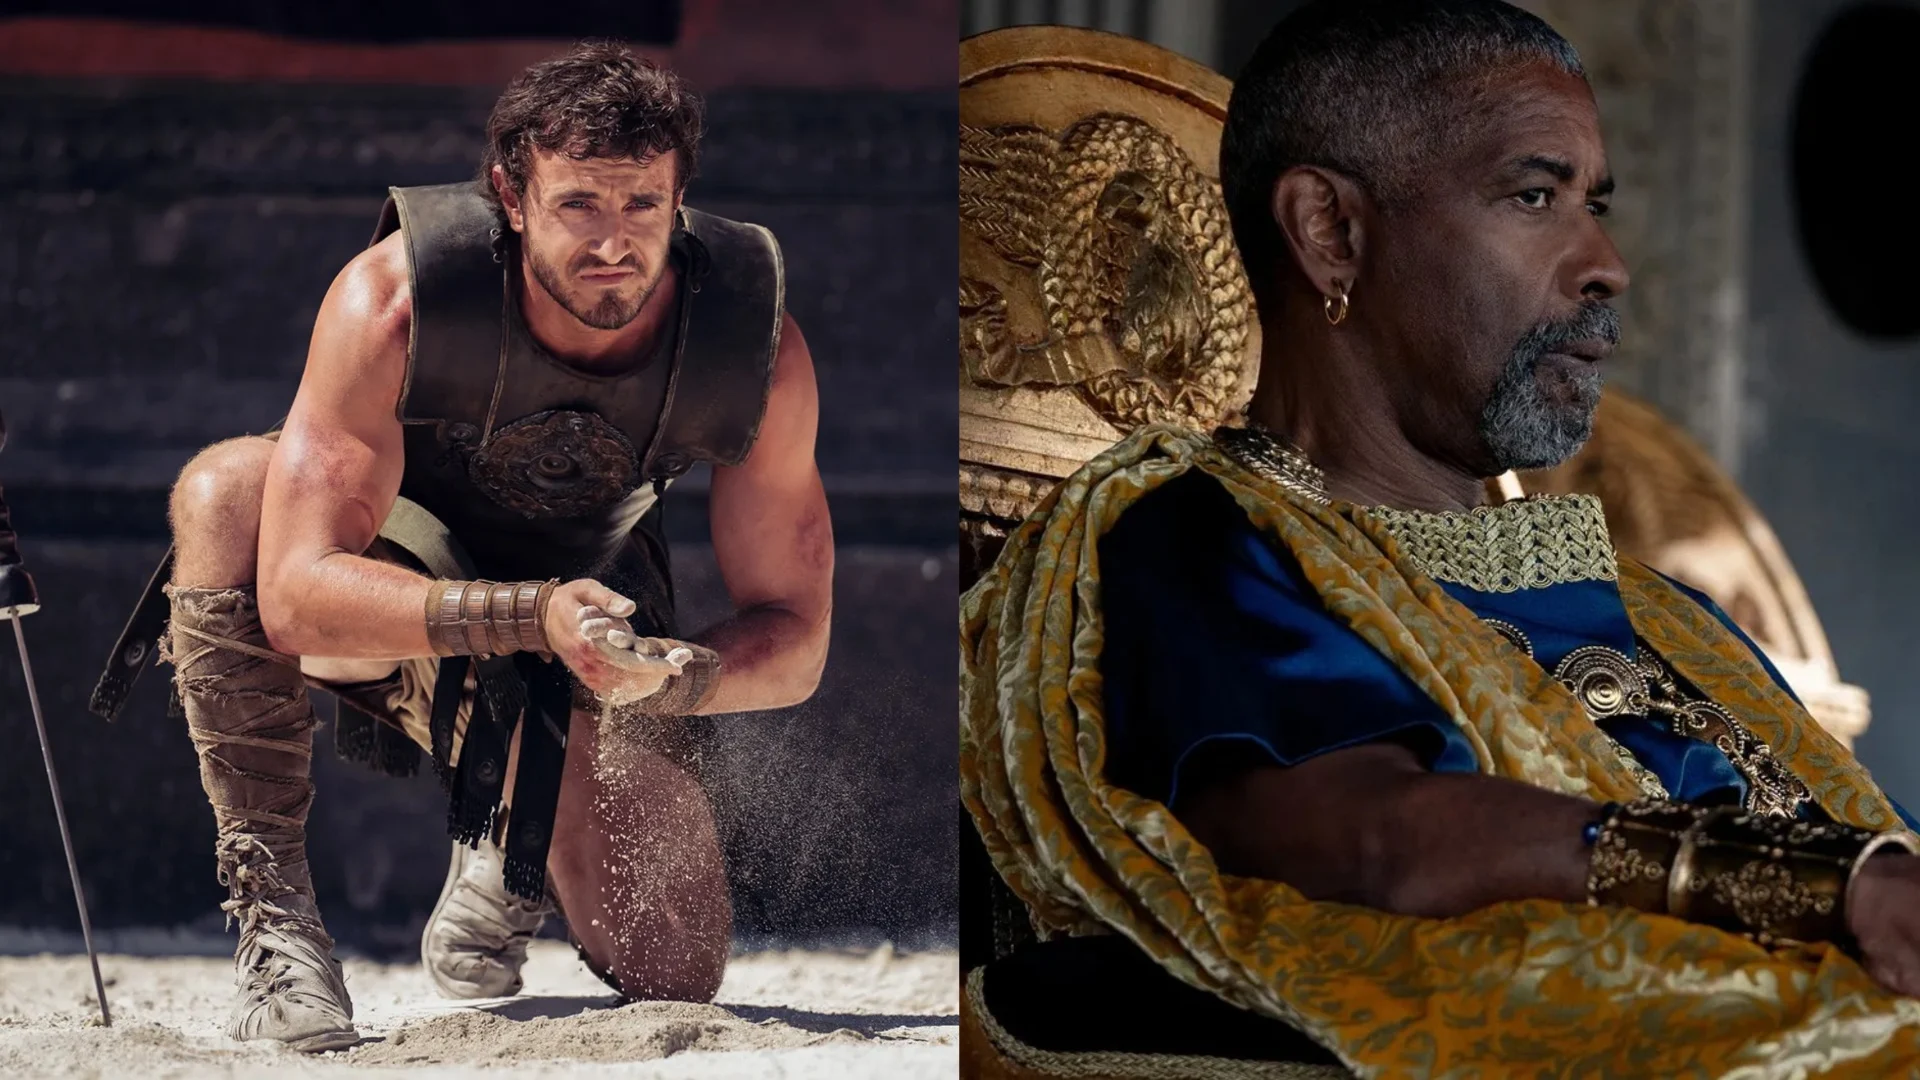 Von Kämpfen mit einem Nashorn bis zur Rebellion gegen Rom: Der erste Trailer zum Historienfilm "Gladiator II" ist erschienen